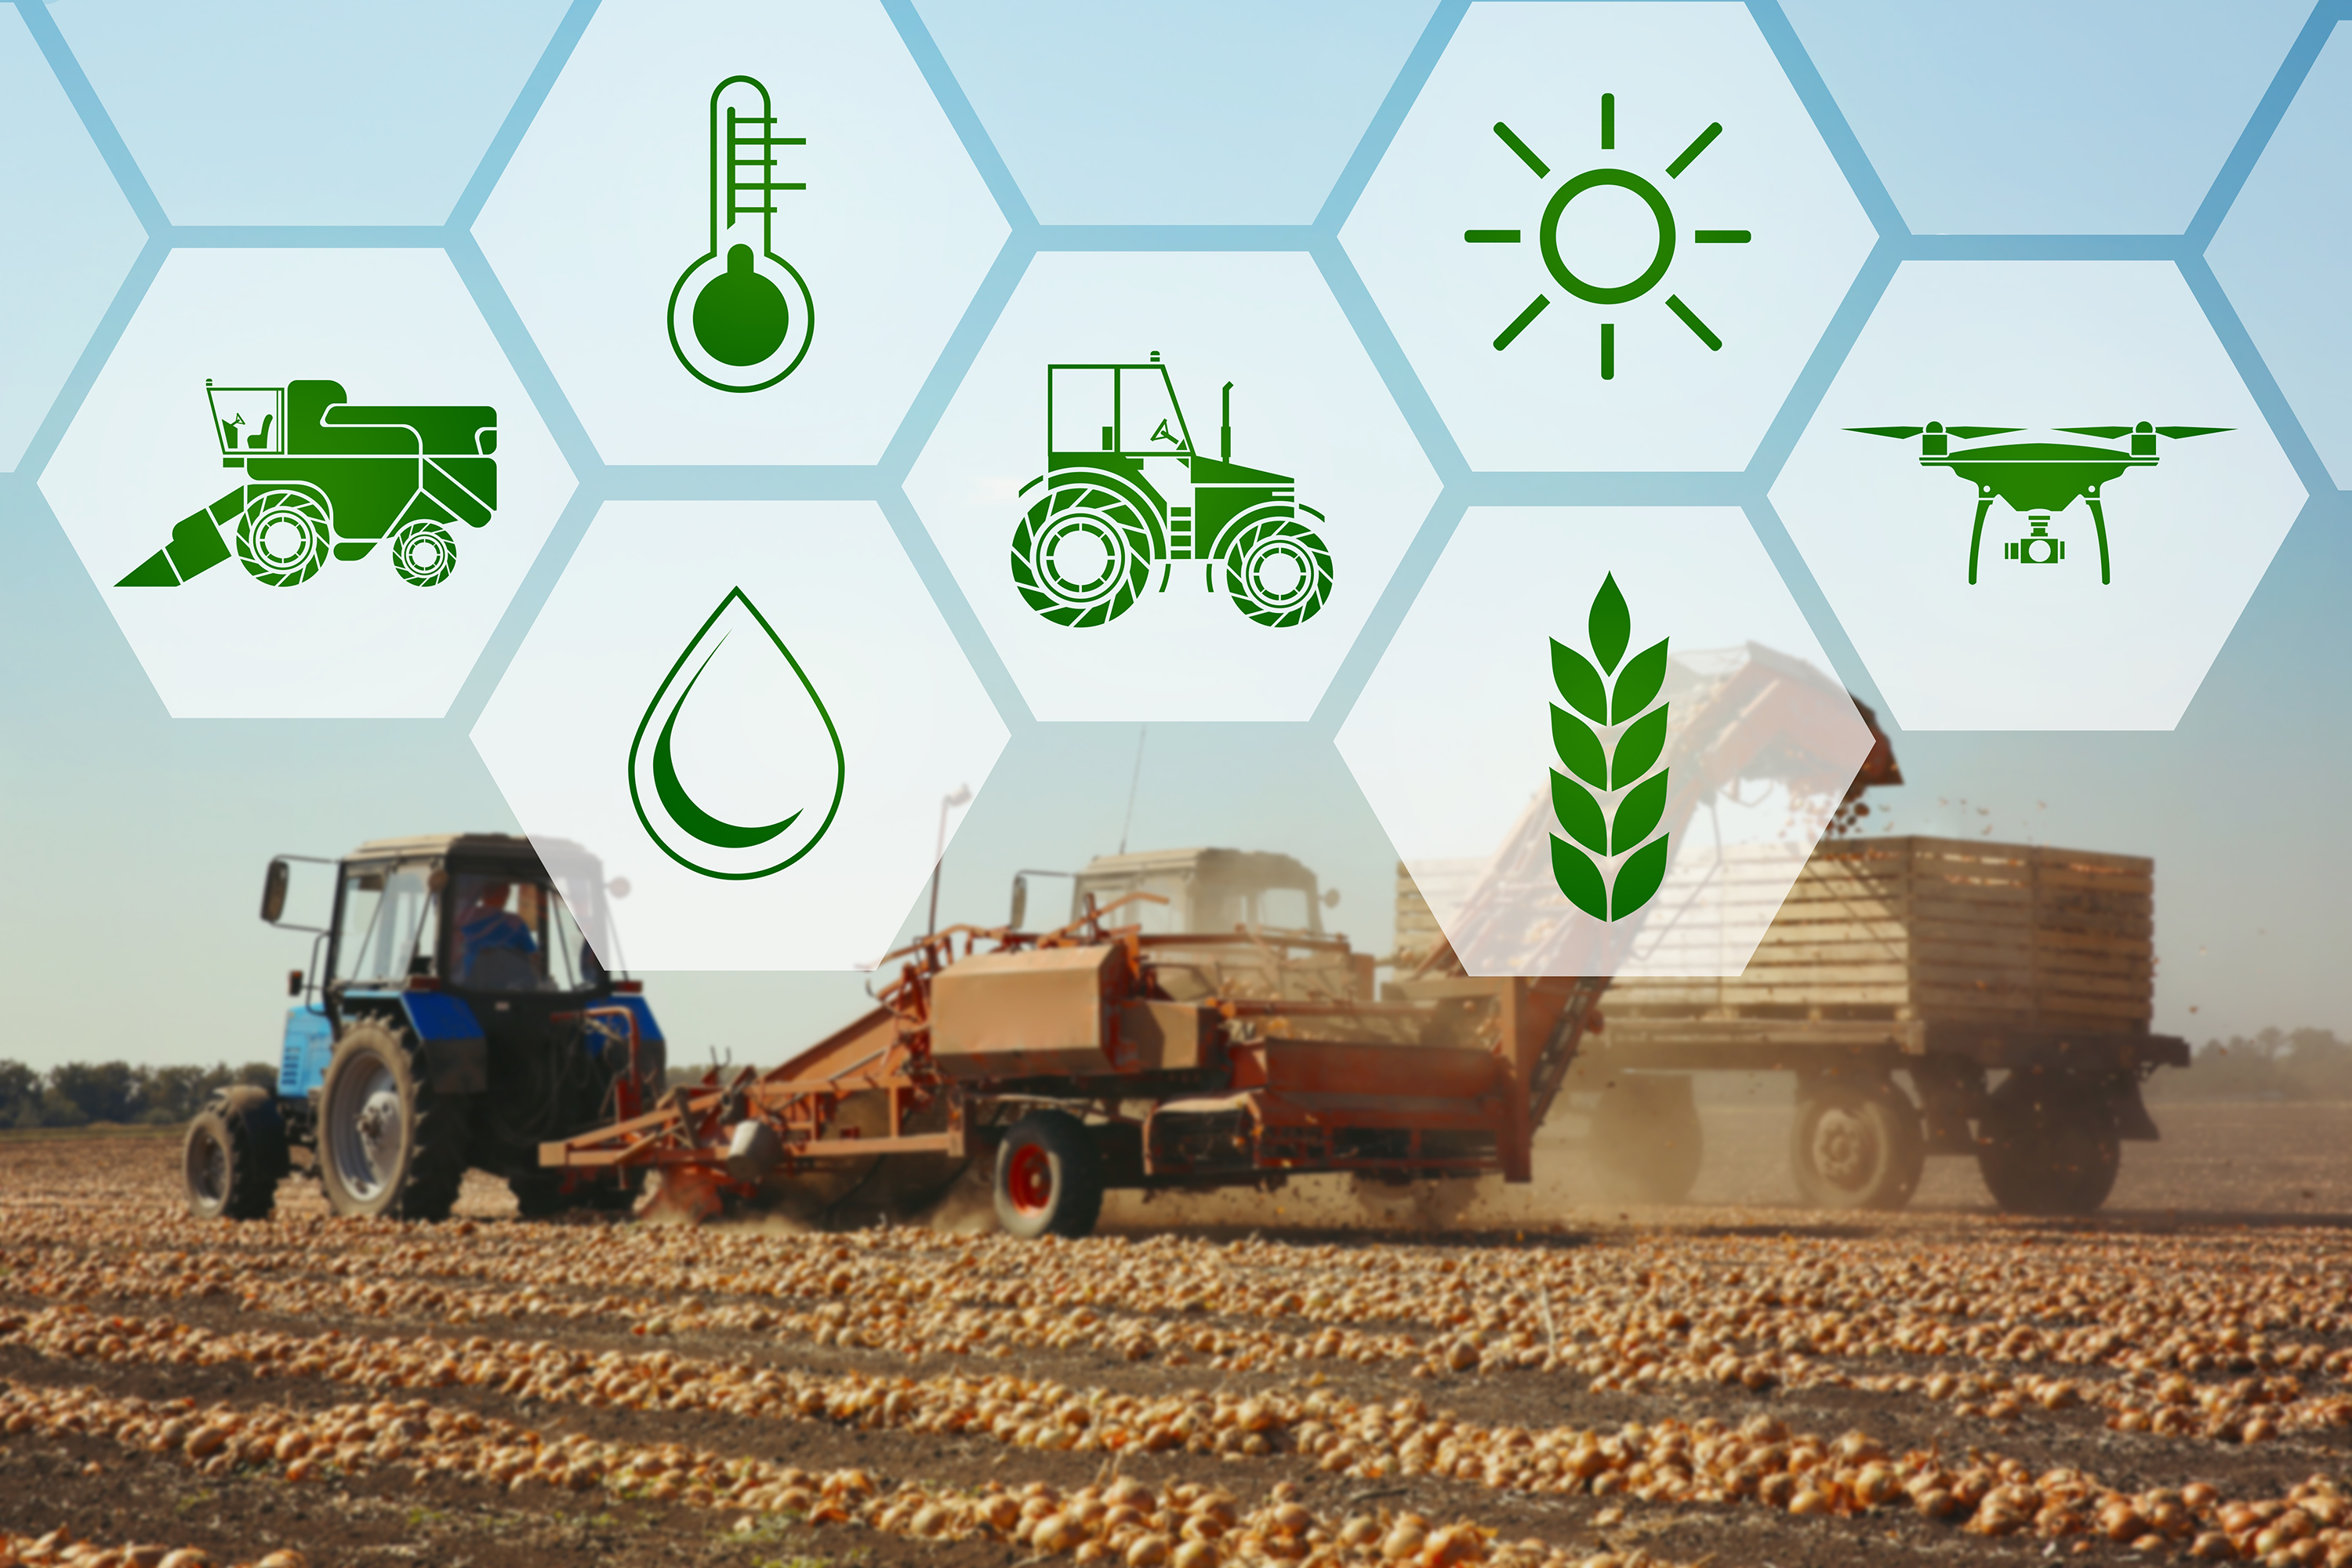 Traktori, puintikone, viljapelto. Vihreitä ikoneja: traktori, vesipisara, puintikone, lämpömittari, aurinko, viljantähkä, drone.